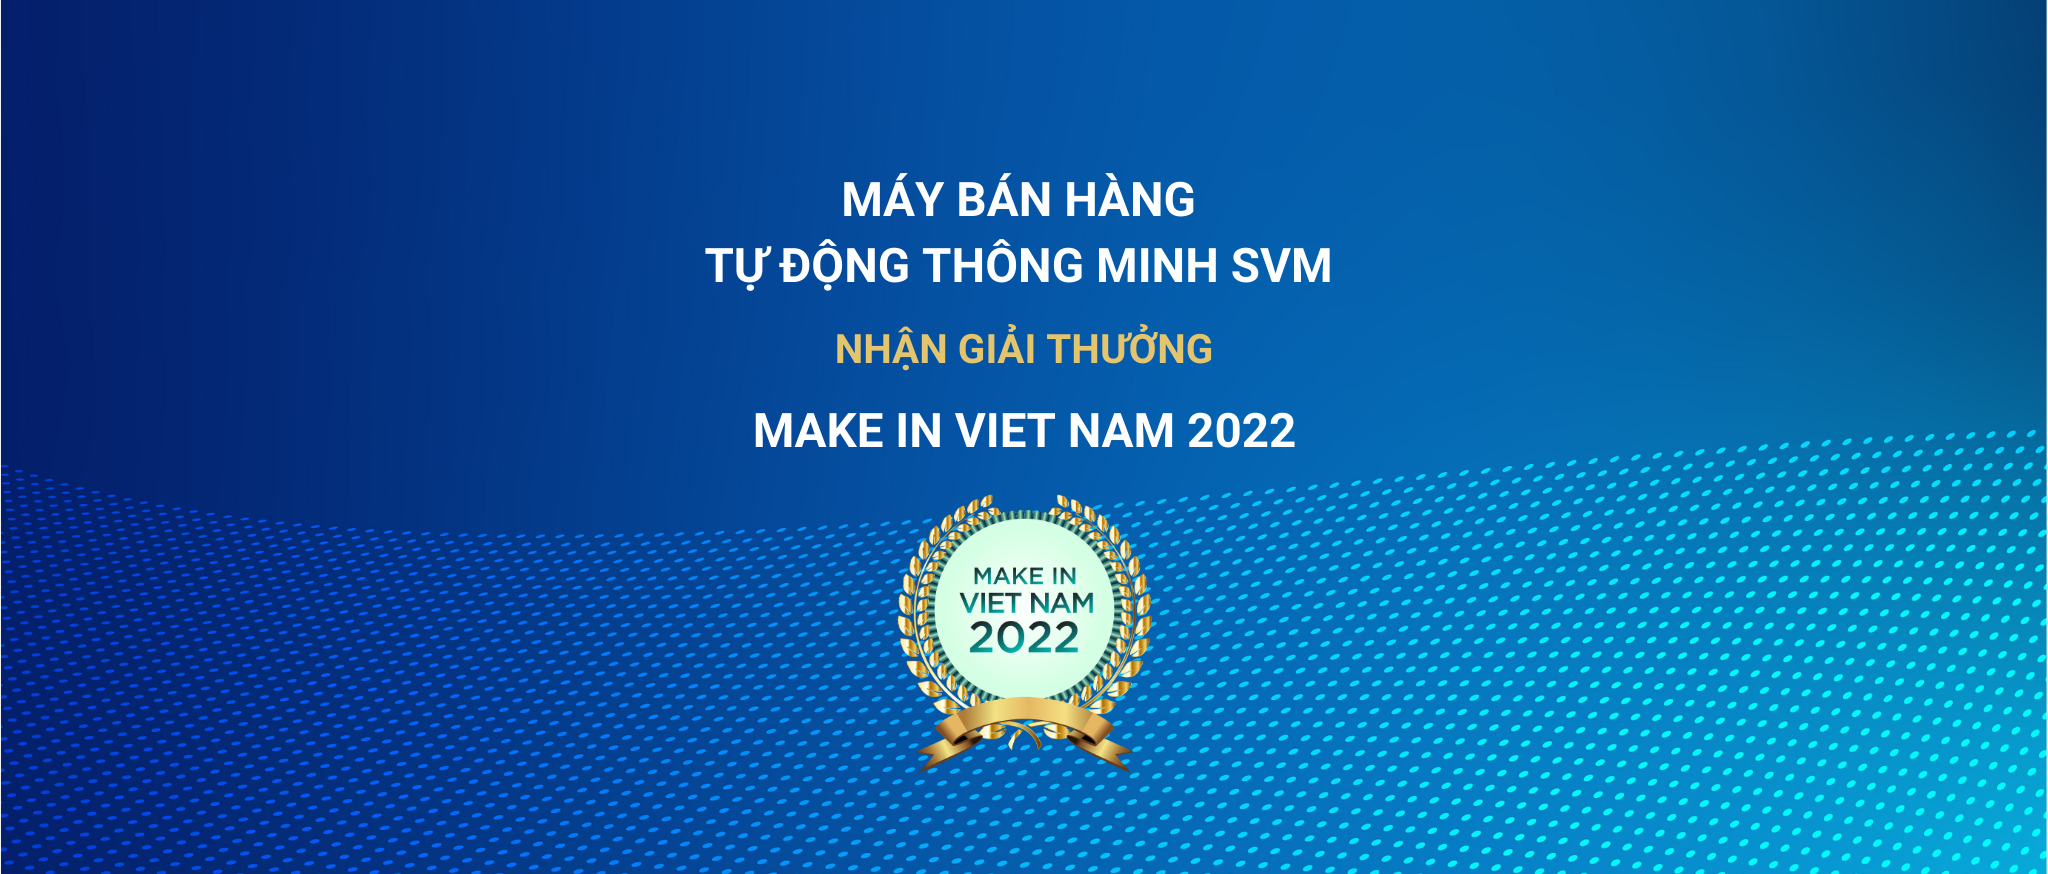 Make in Viet Nam 2022